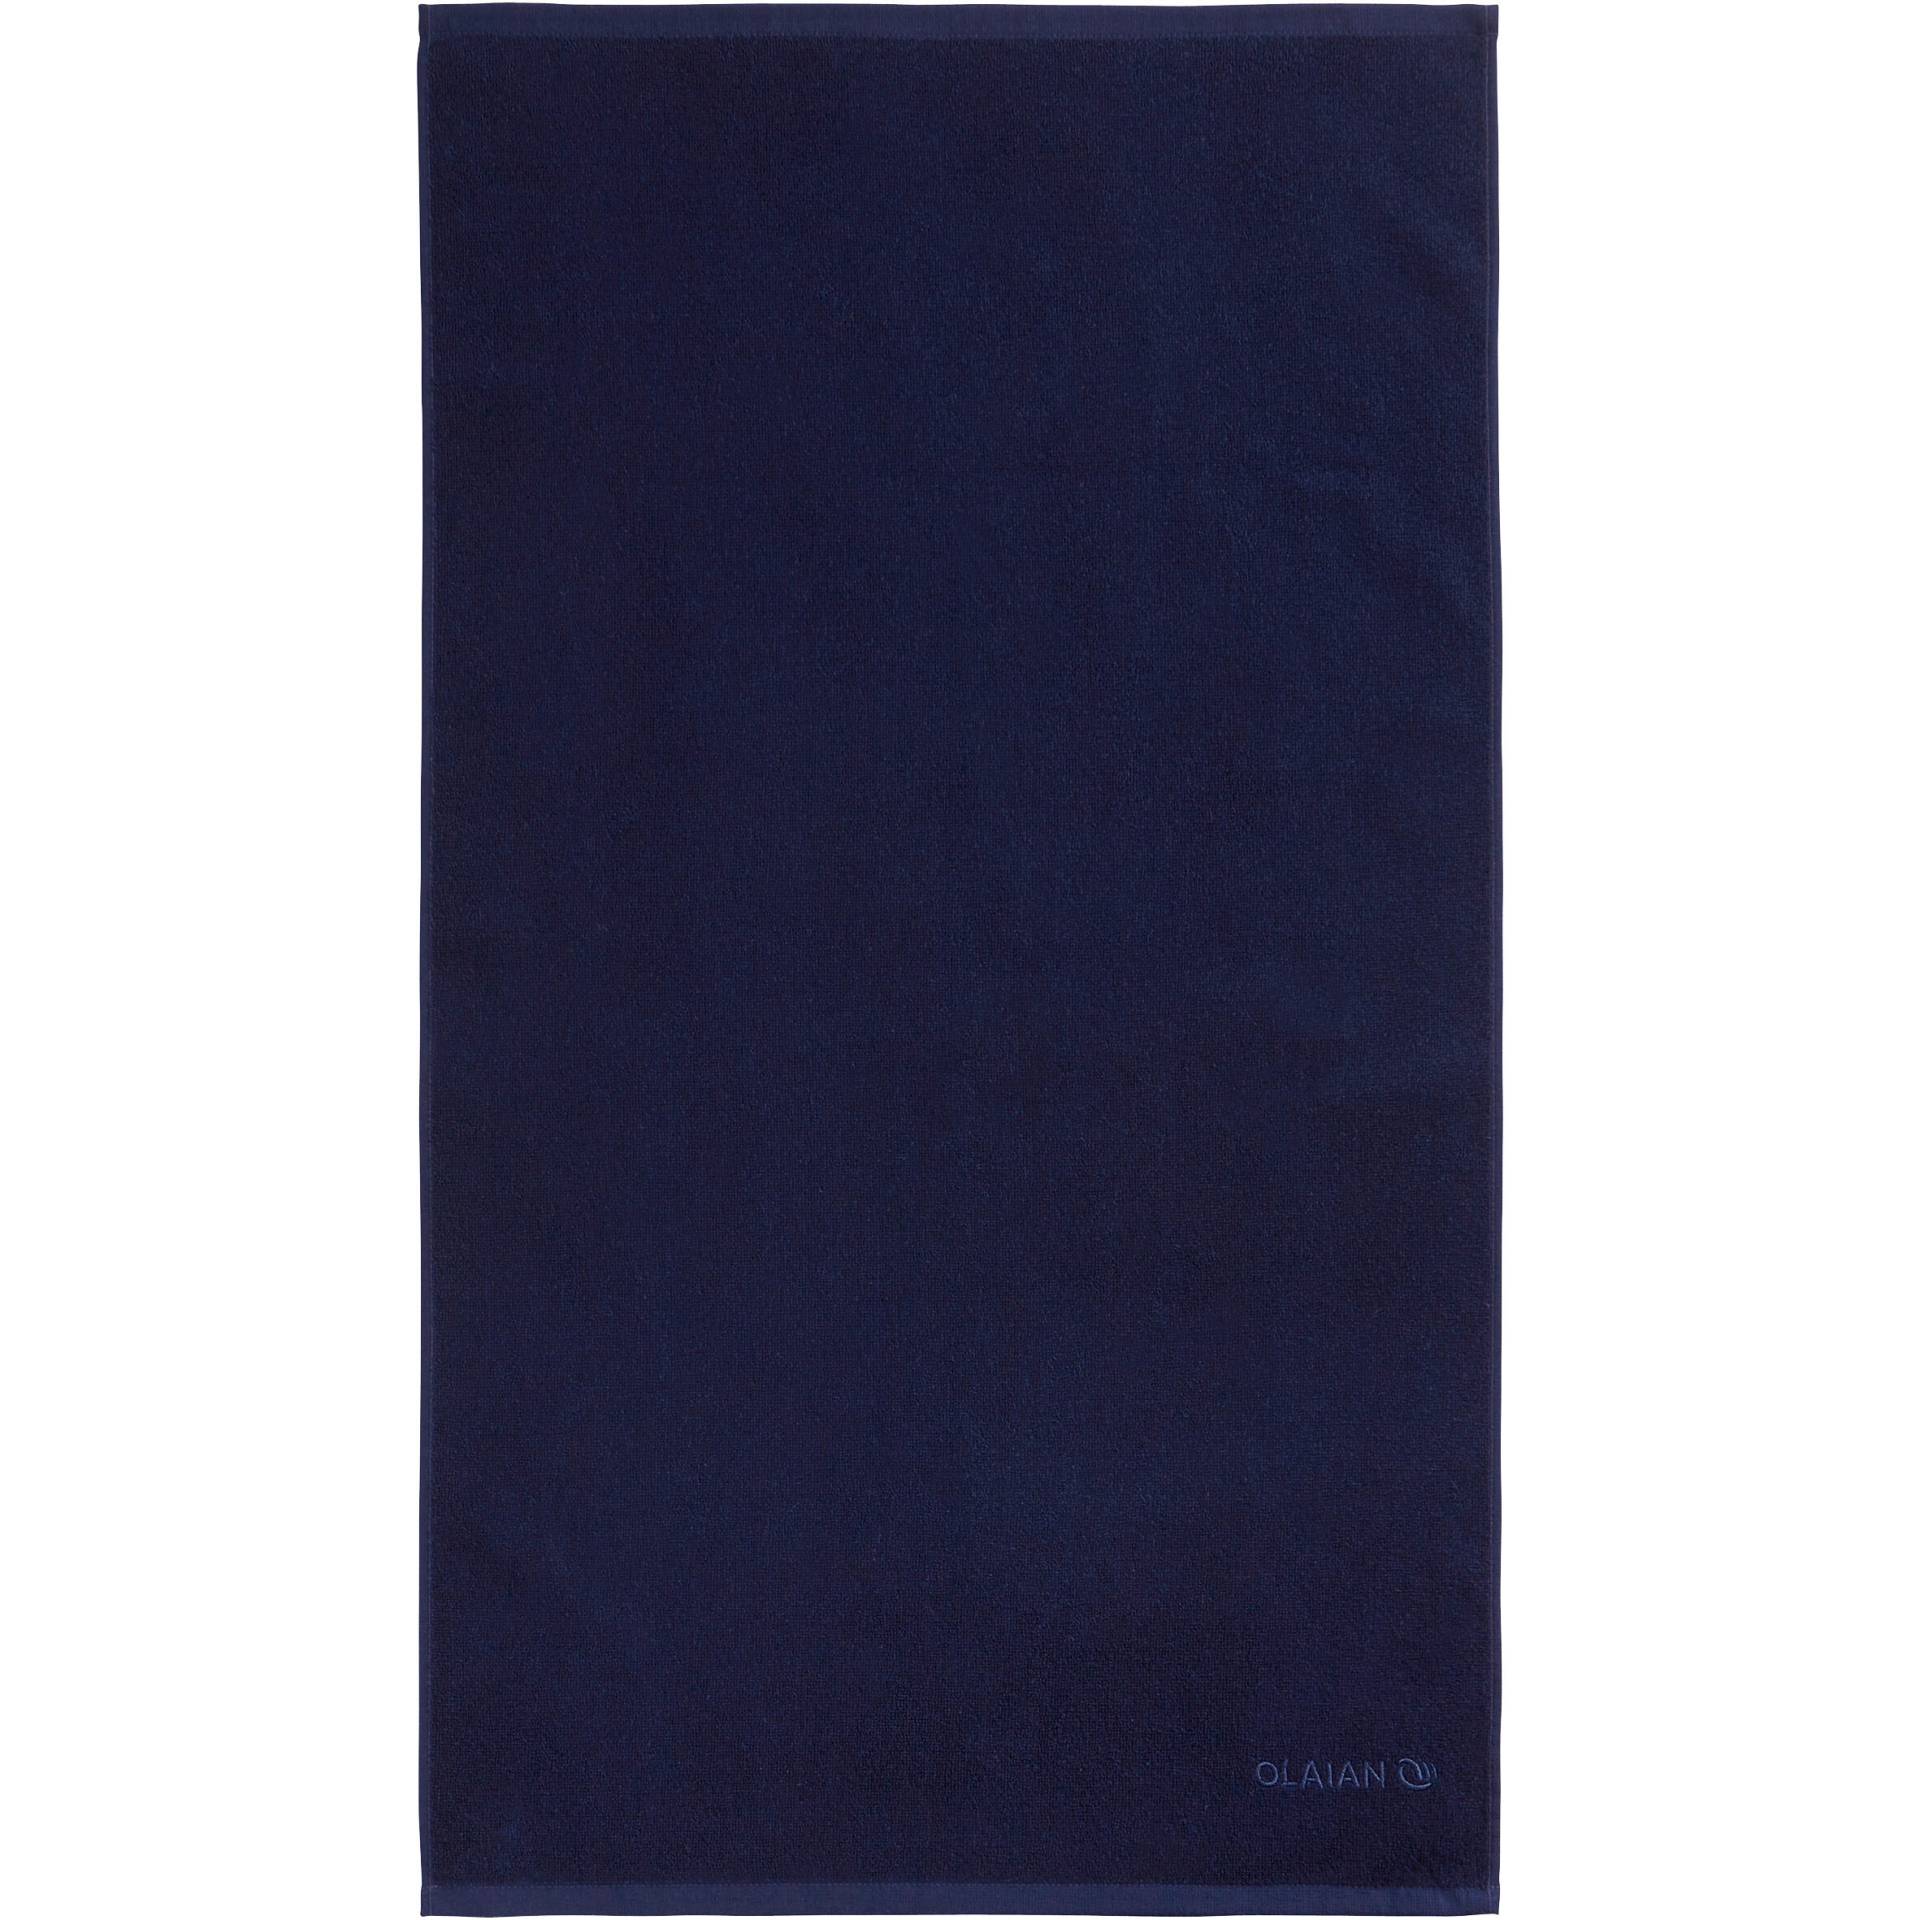 Strandhandtuch S 90 × 50 cm dunkelblau von OLAIAN